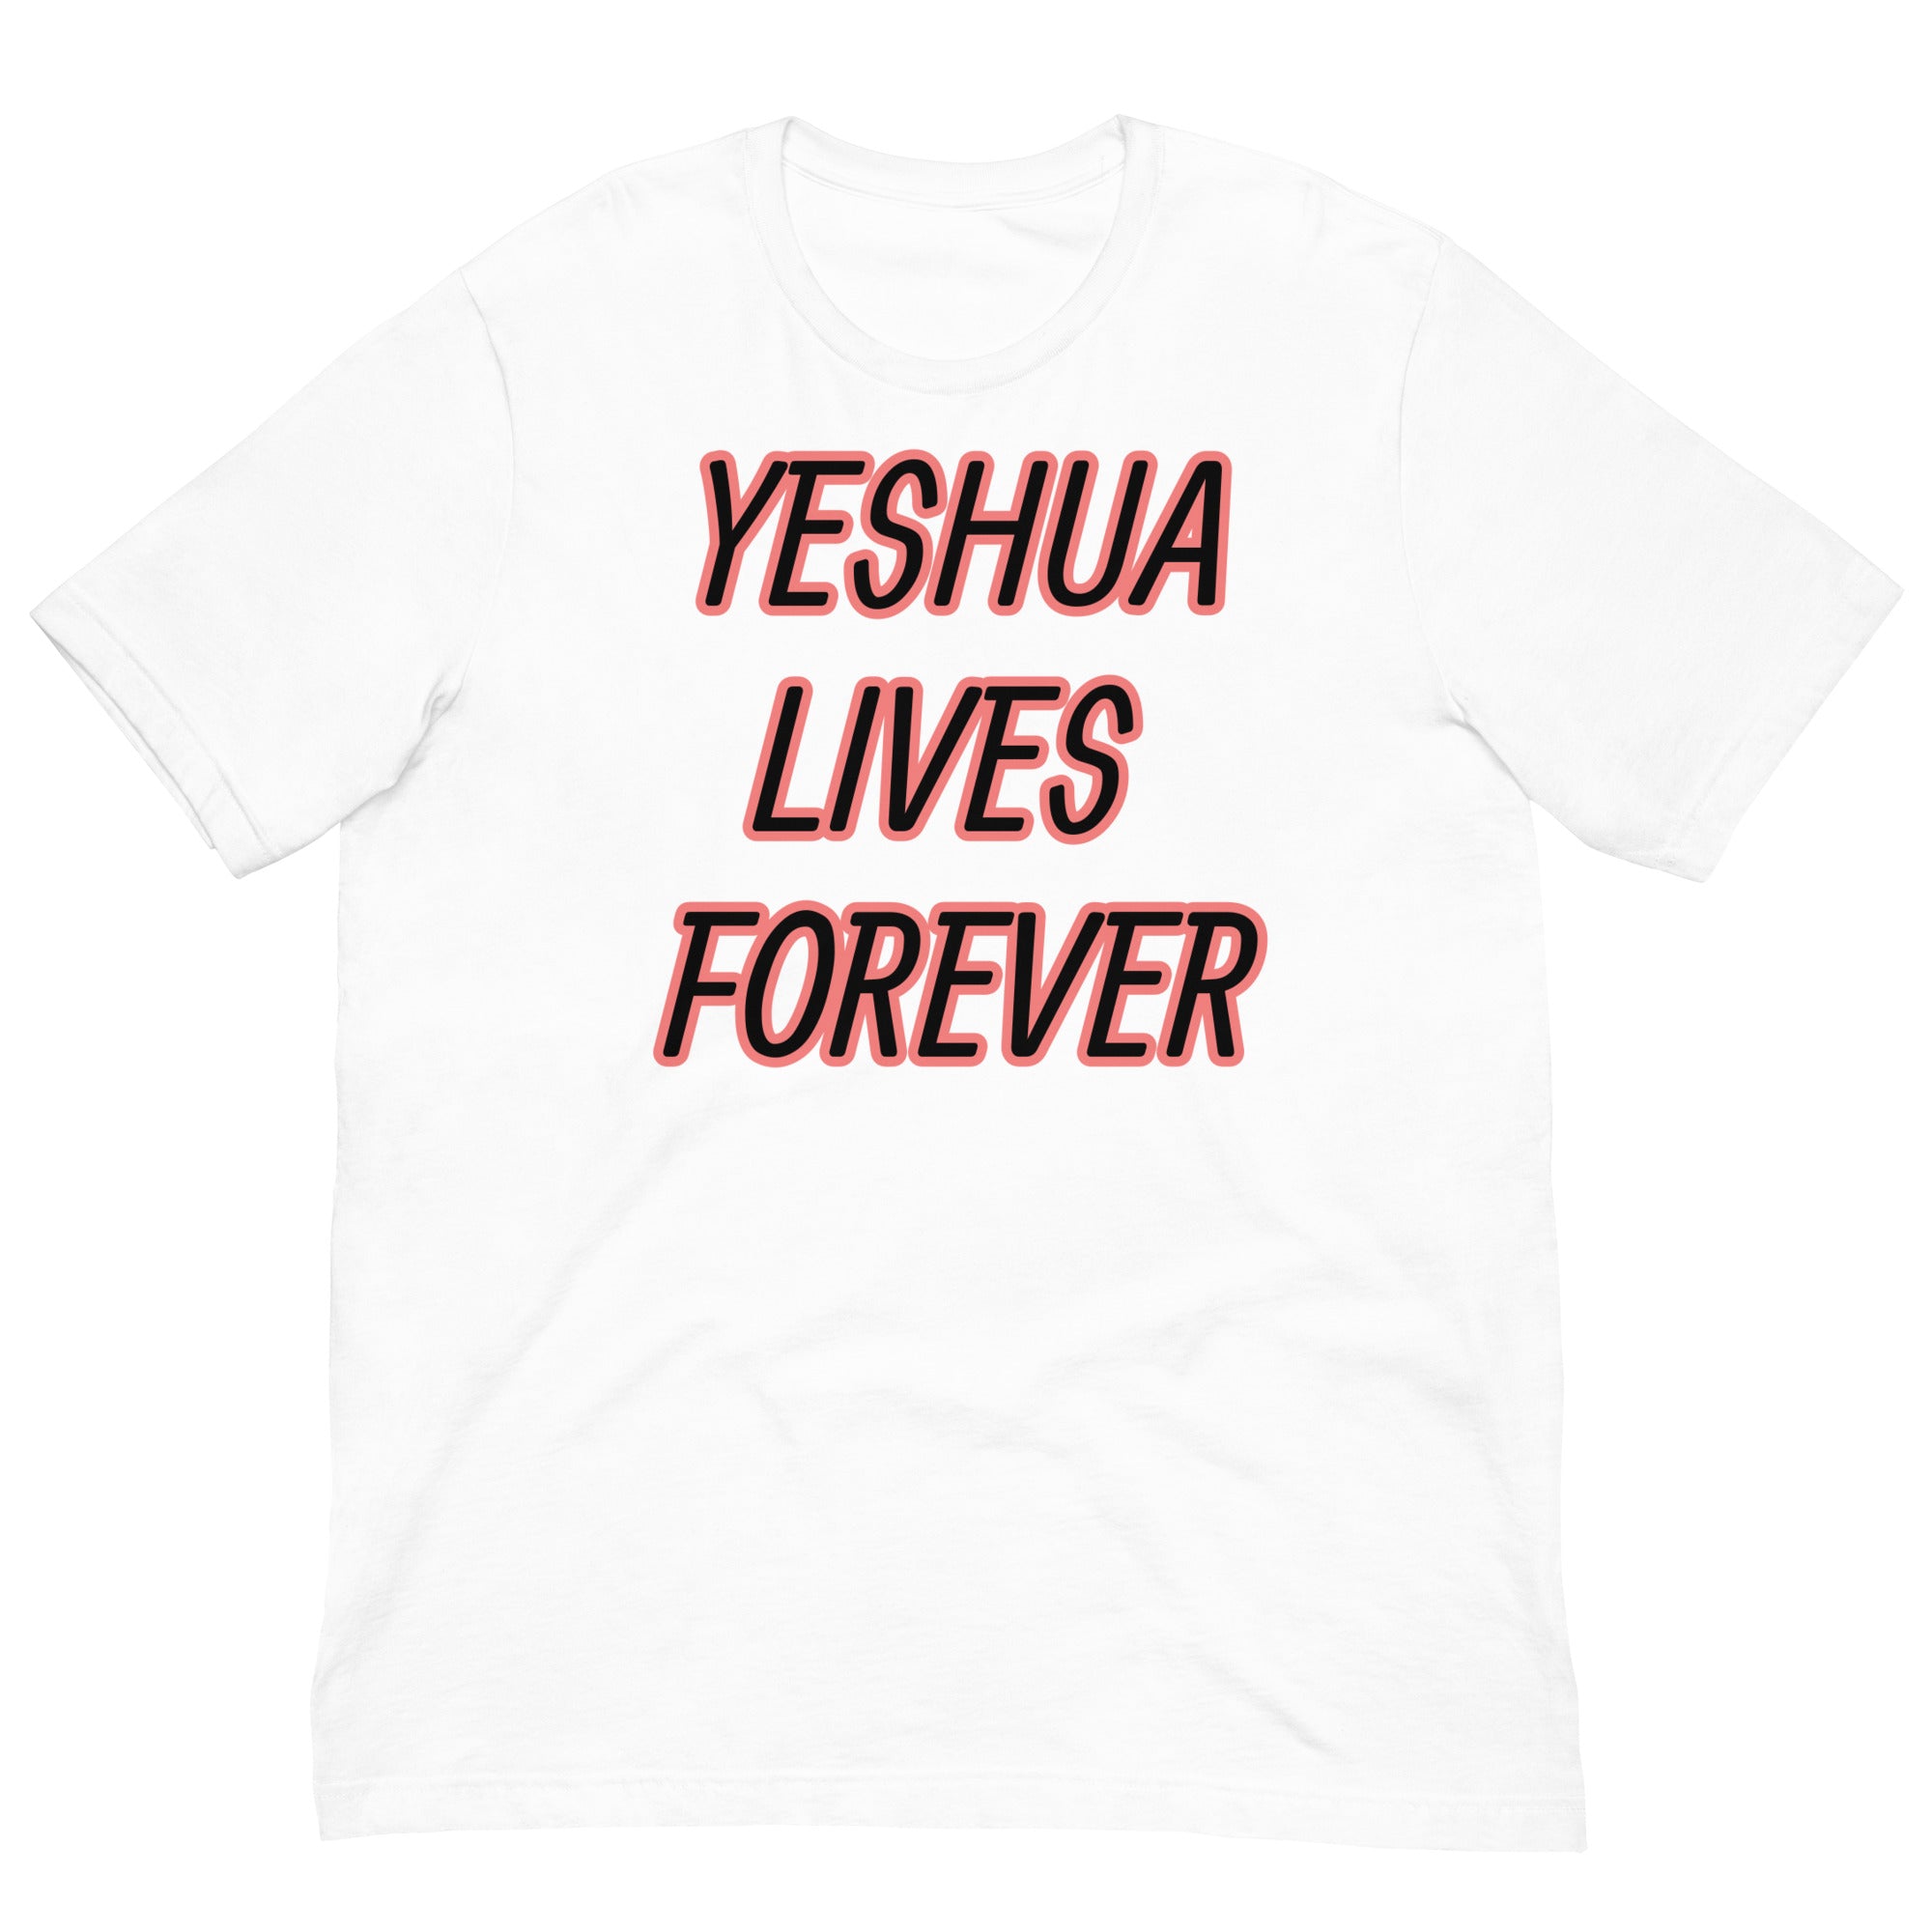 Yeshua lives forever Unisex t-shirt